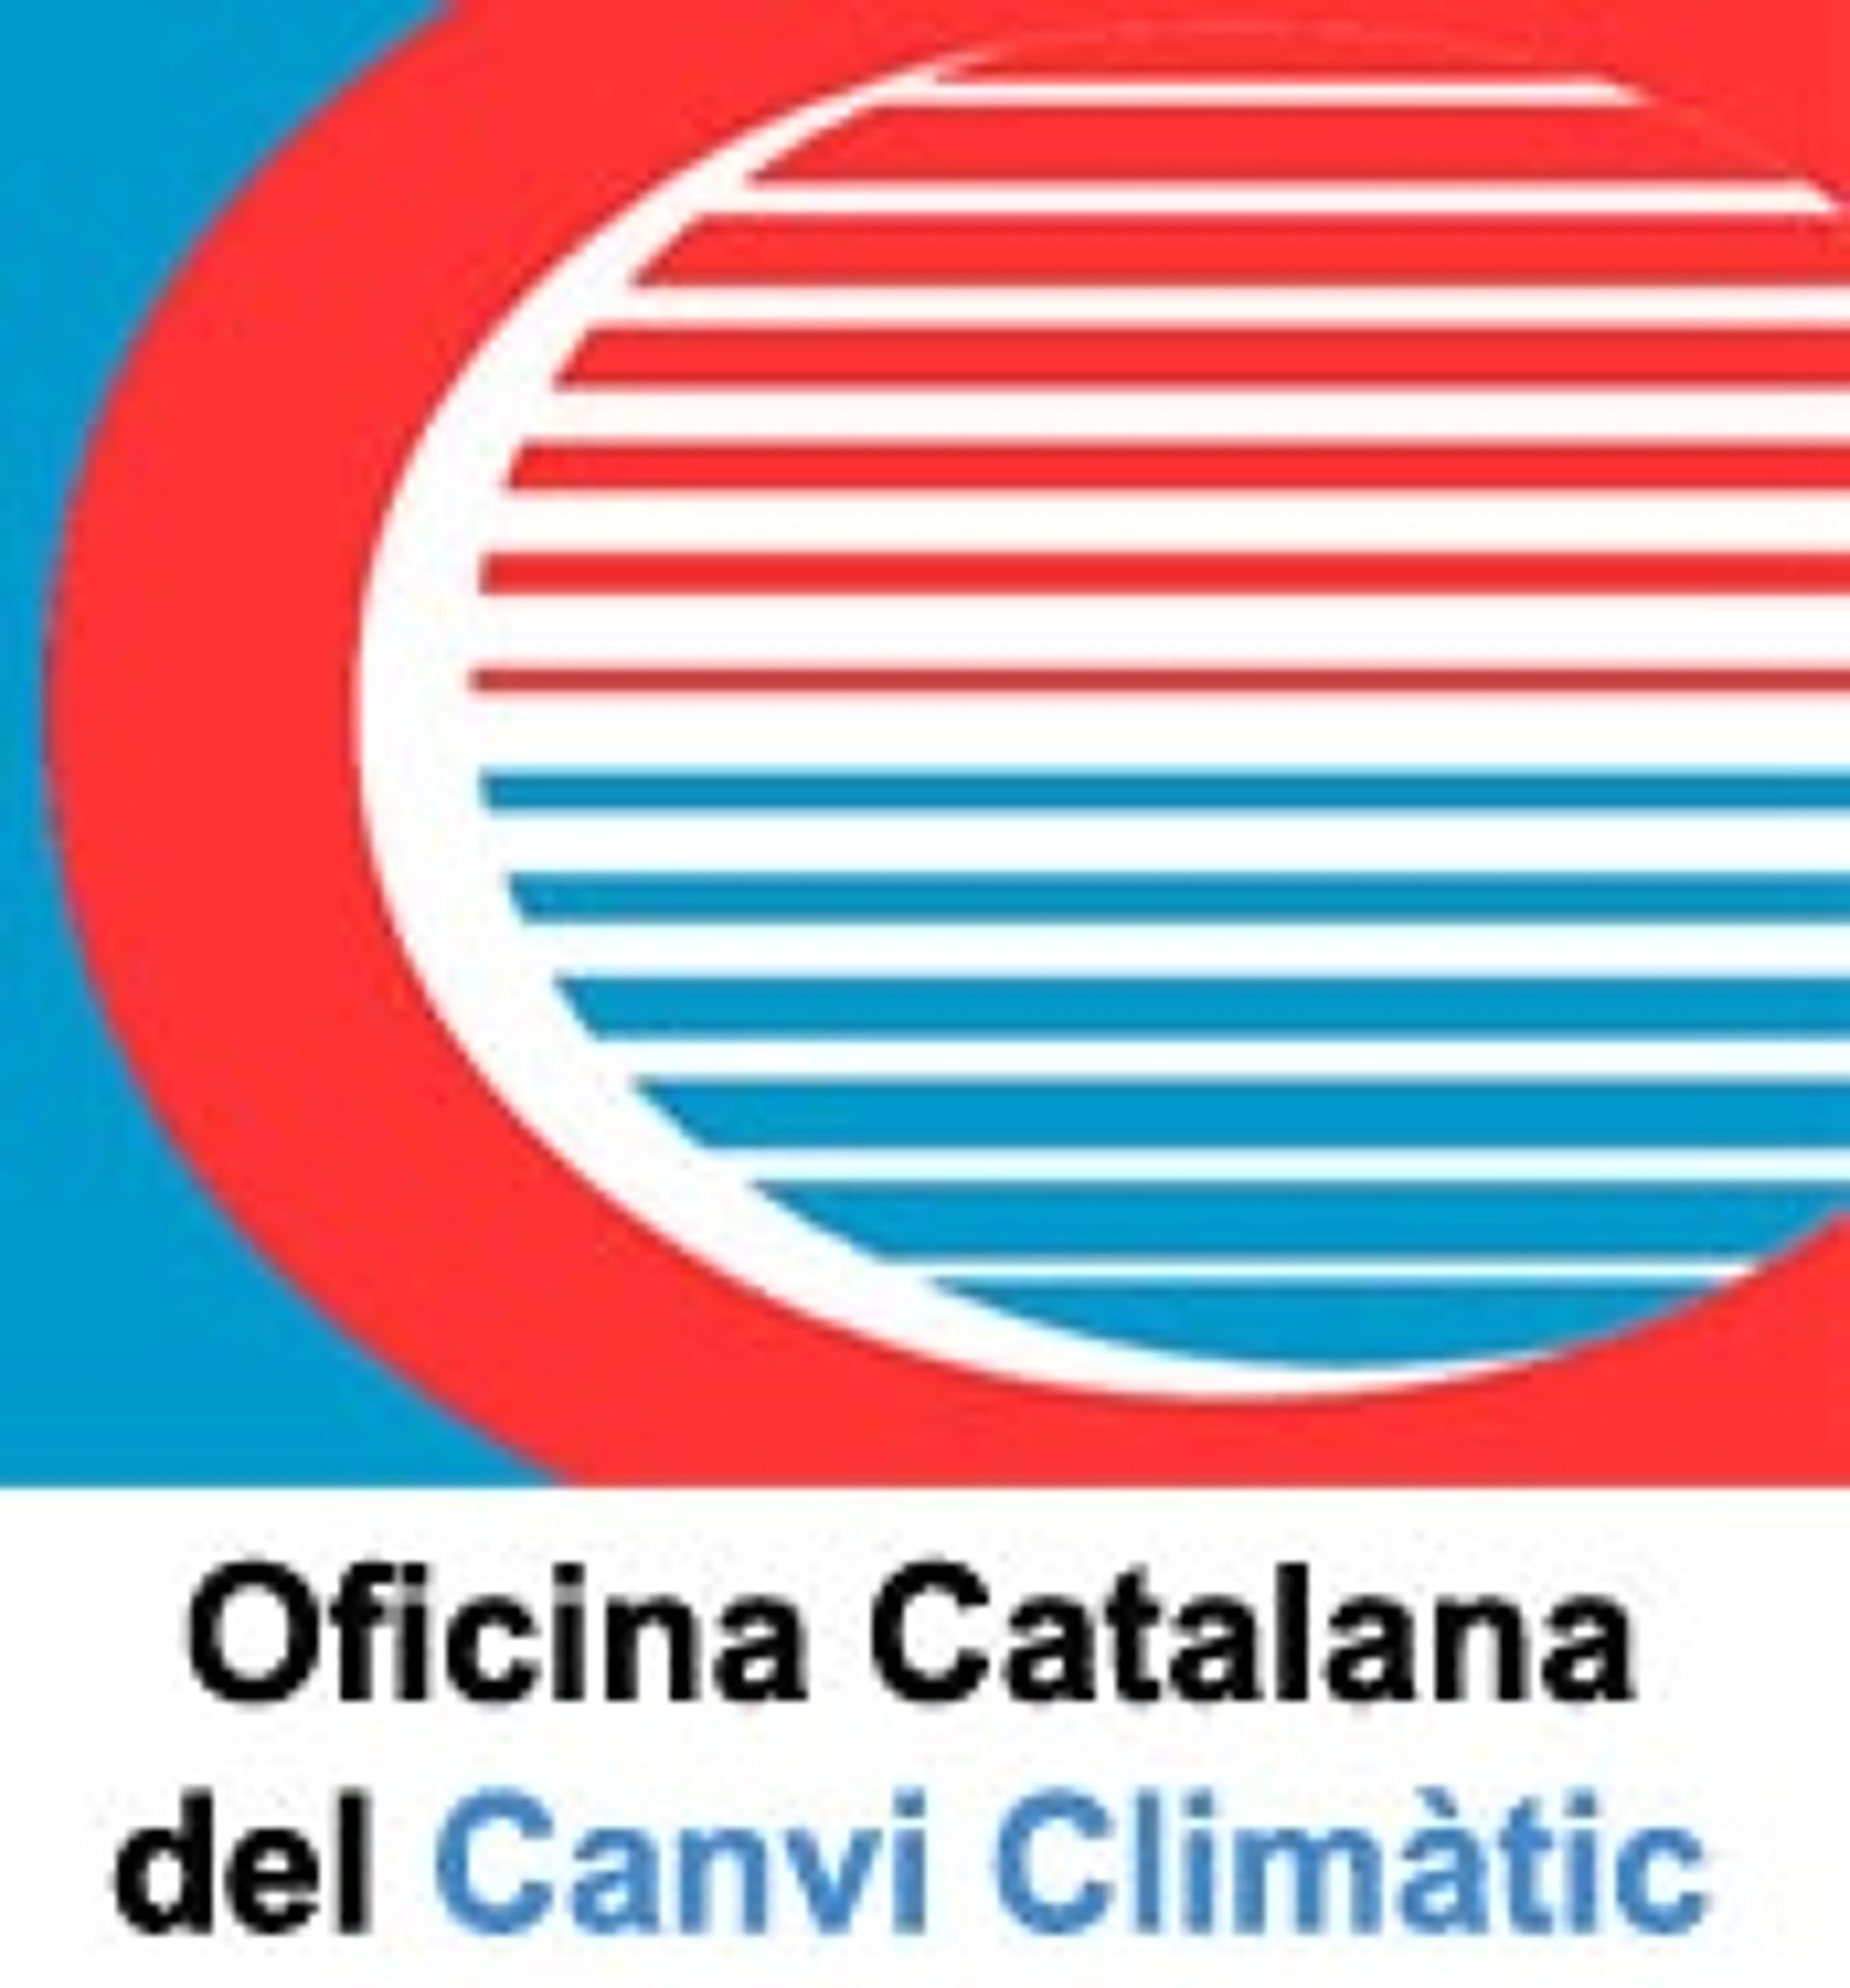 El Club de Vela Blanes s'adhereix al Programa d'Acords Voluntaris per a la reducció de les emissions de gasos amb efecte d'hivernacle (GEH) al web de l'Oficina Catalana del Canvi Climàtic.